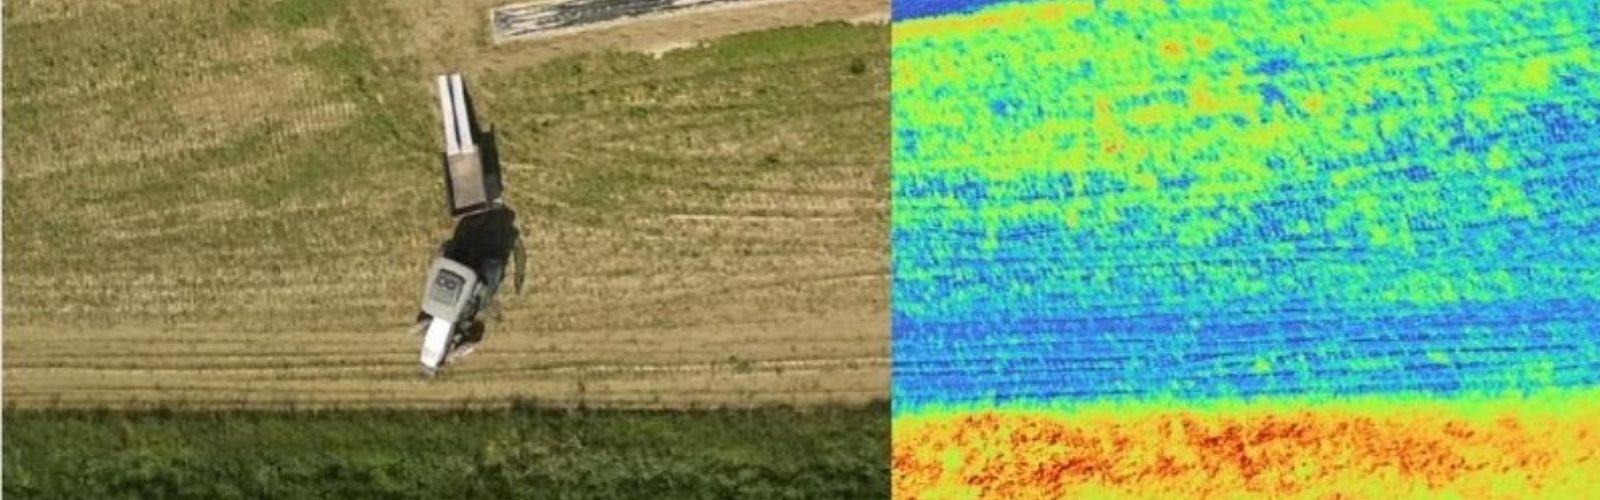 Droni e satelliti per combattere lo stress idrico delle colture